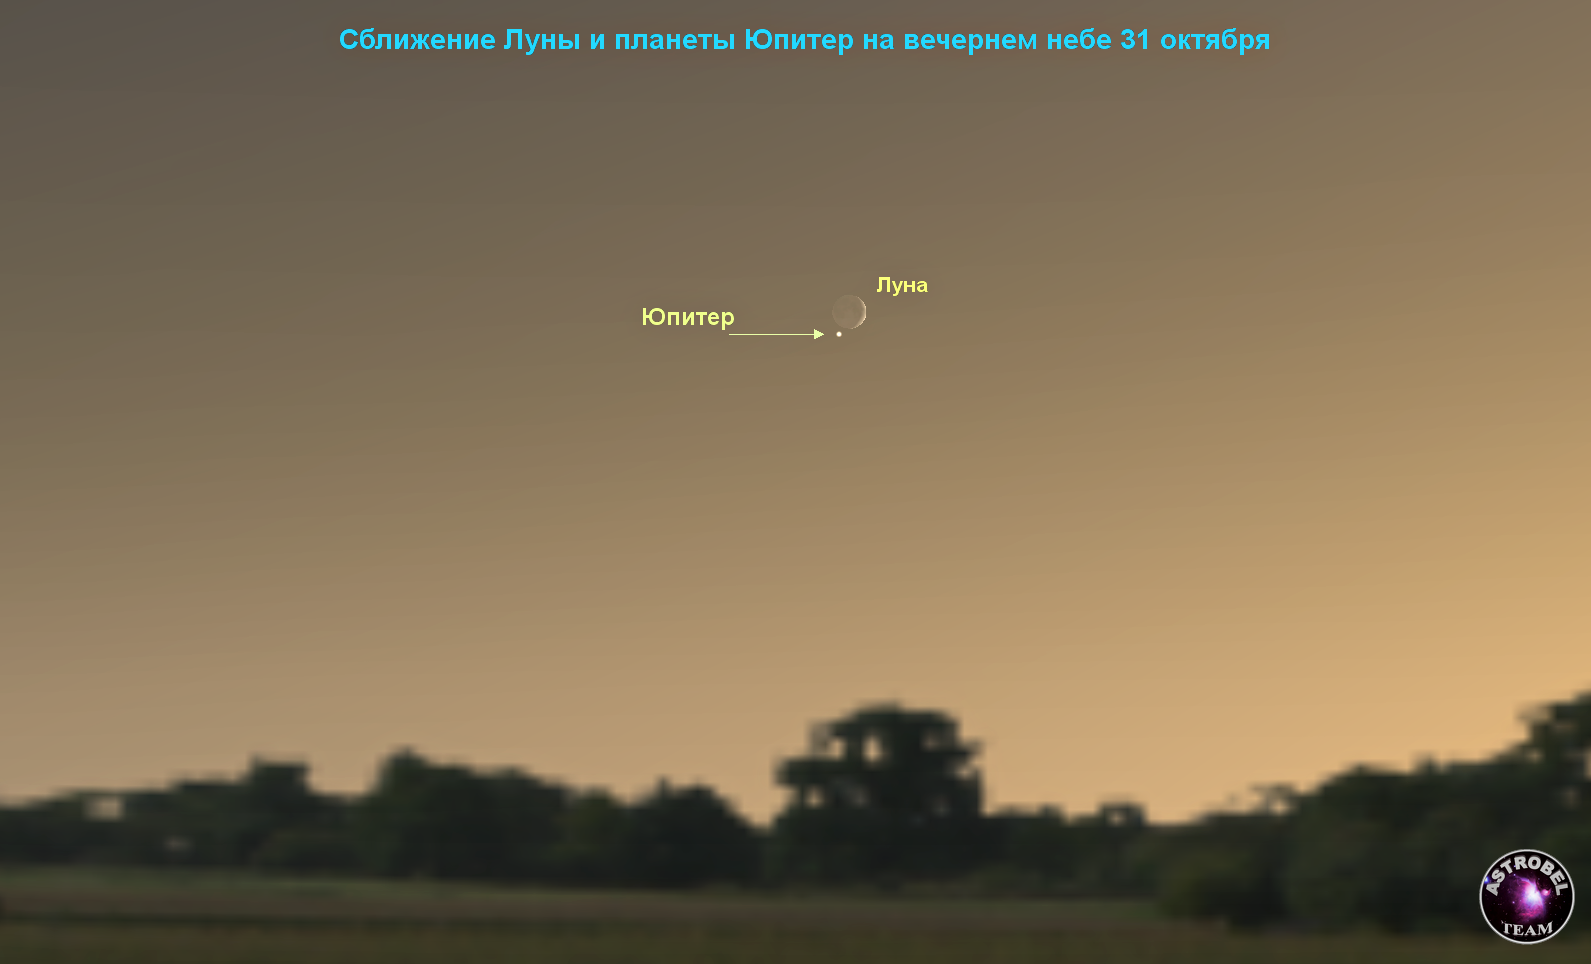 Сближение Луны и планеты Юпитер на вечернем небе 31 октября